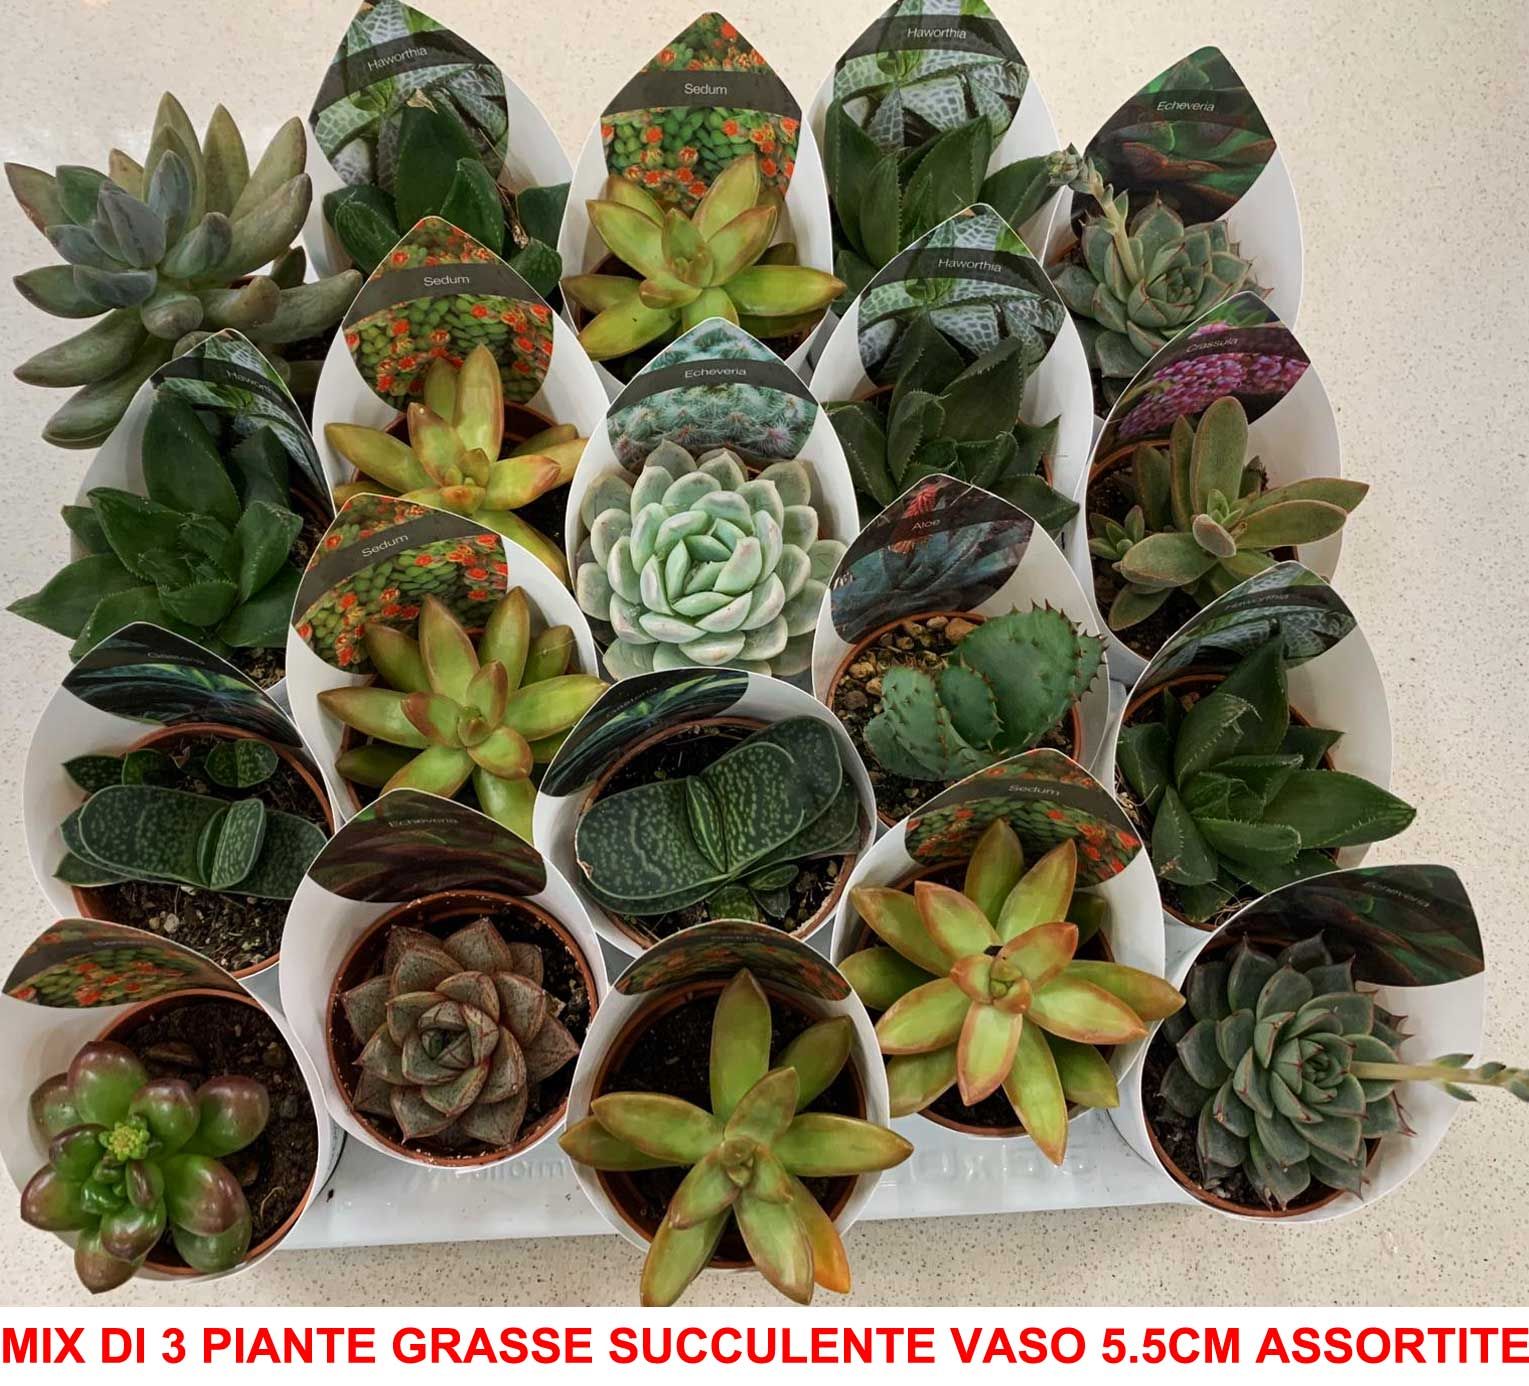 Mix Di 3 Piante Grasse Succulente Vaso 5.5cm Composizioni